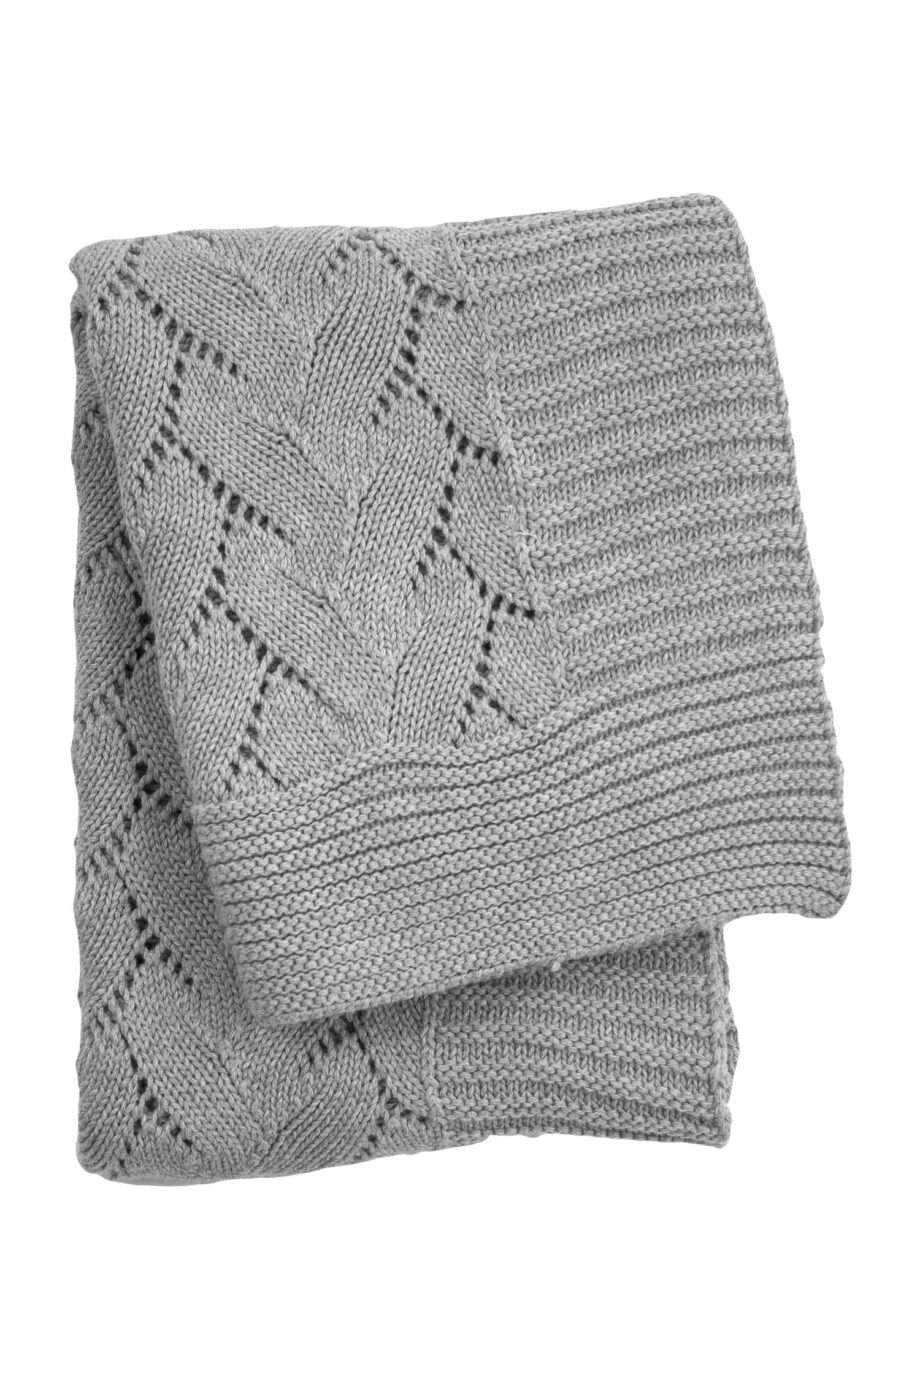 ajoure light grey knitted cotton little blanket medium